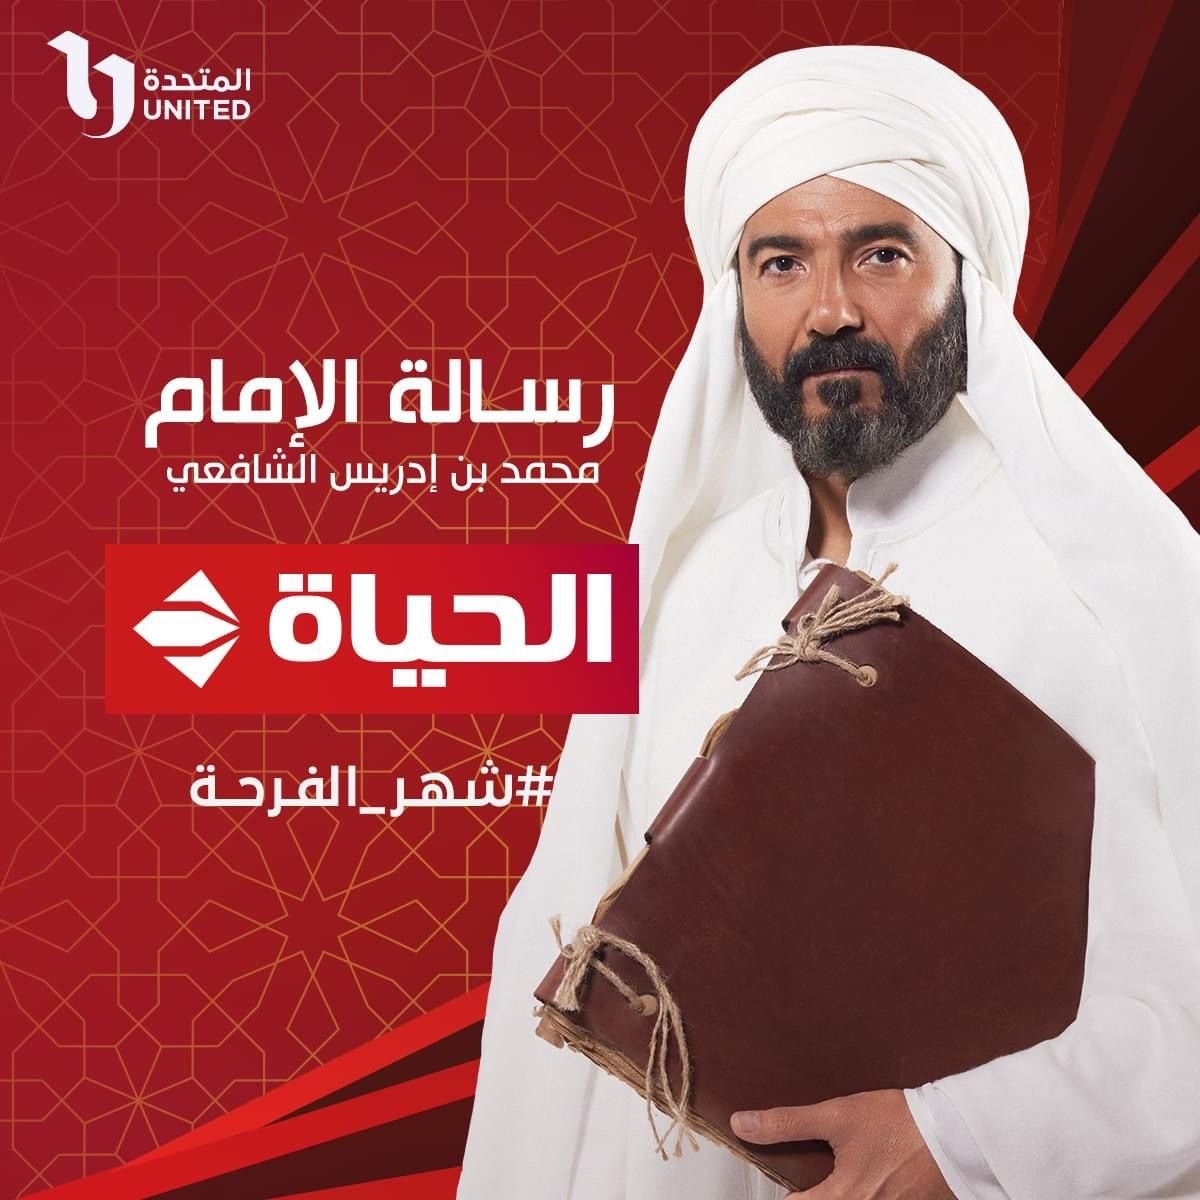 مشاهدة مسلسل رسالة الامام الحلقة 8 الثامنة في رمضان 2023 على قناة cbc 